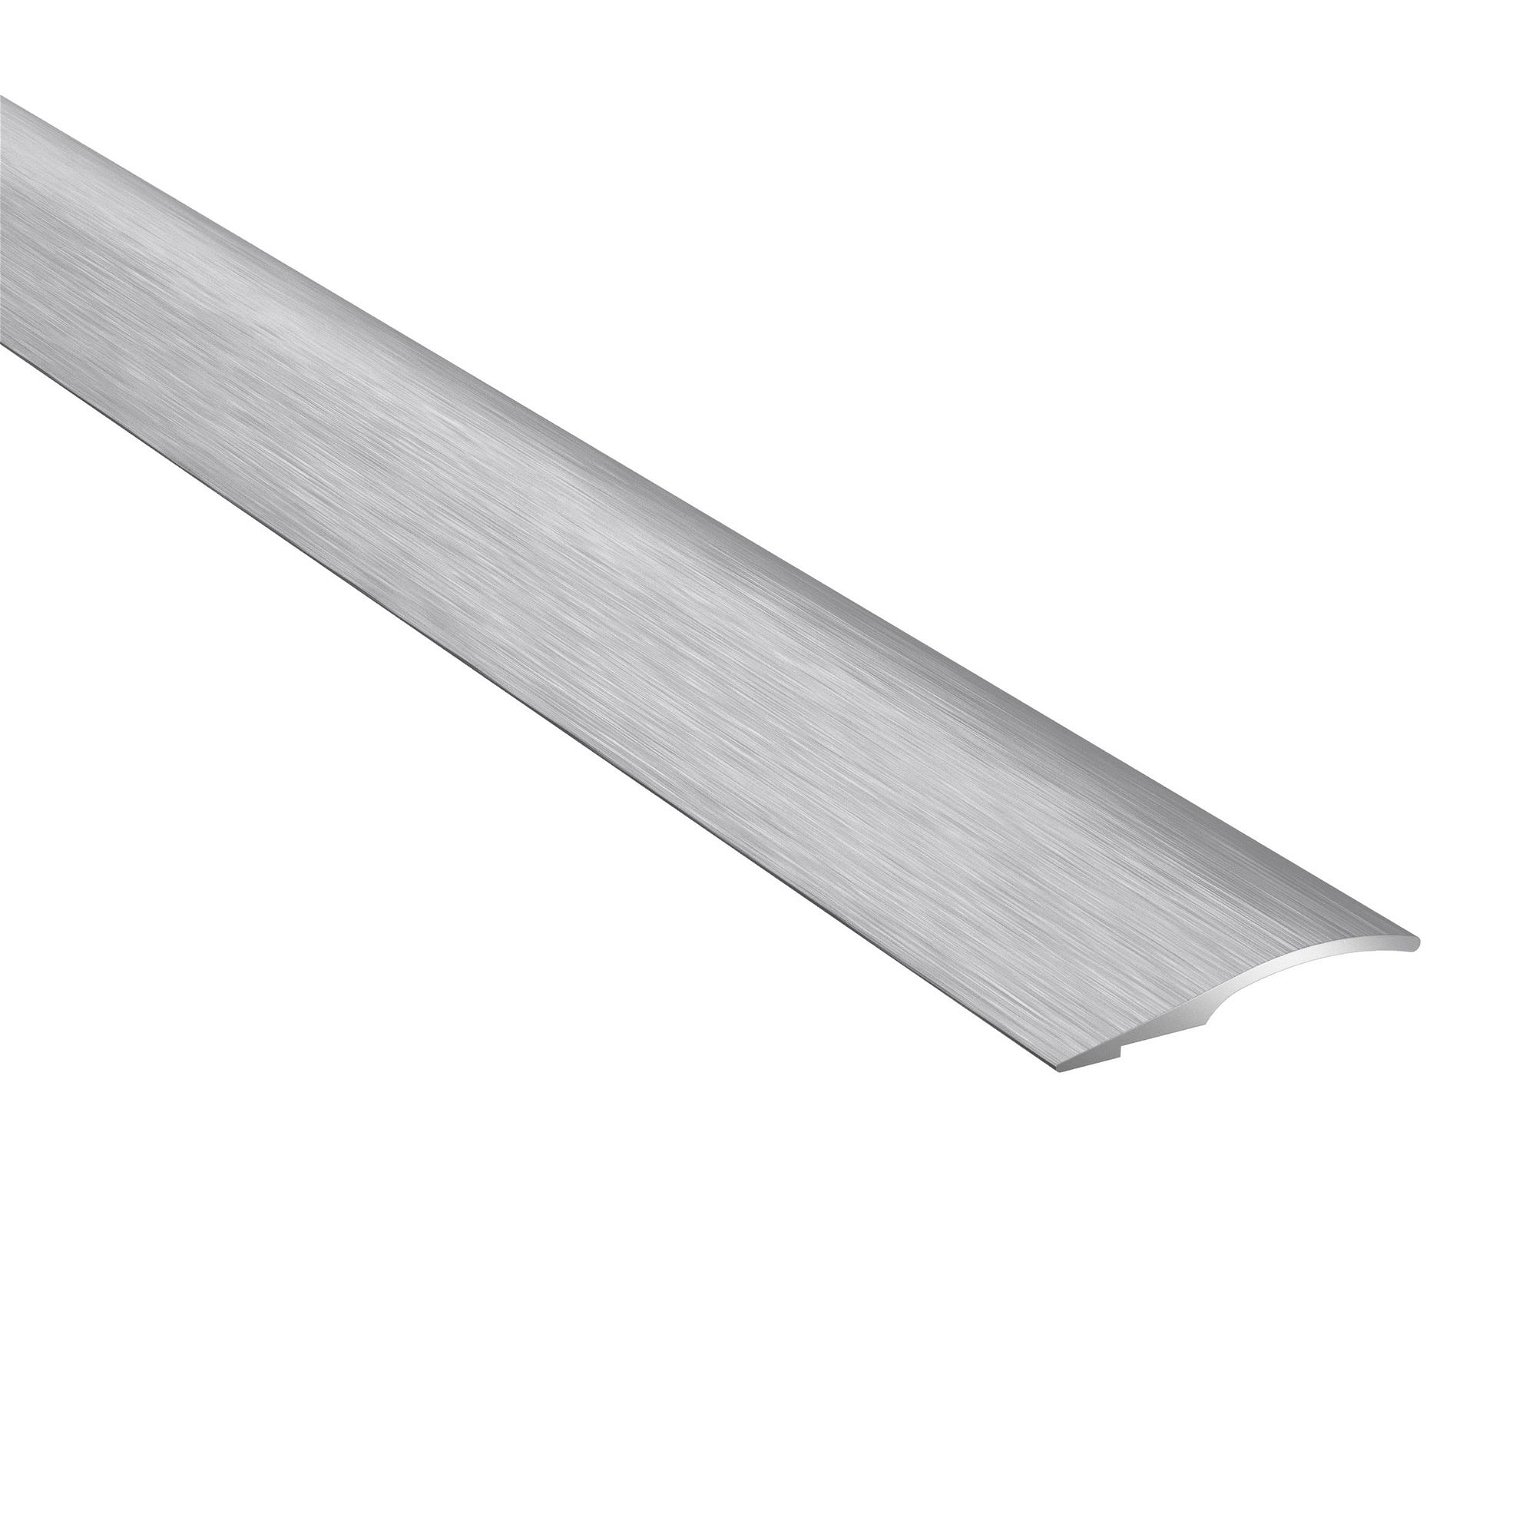 Aliumininė grindų juostelė PRO26 B1, šukuoto sidabro sp., 26 mm pločio, 93 cm ilgio